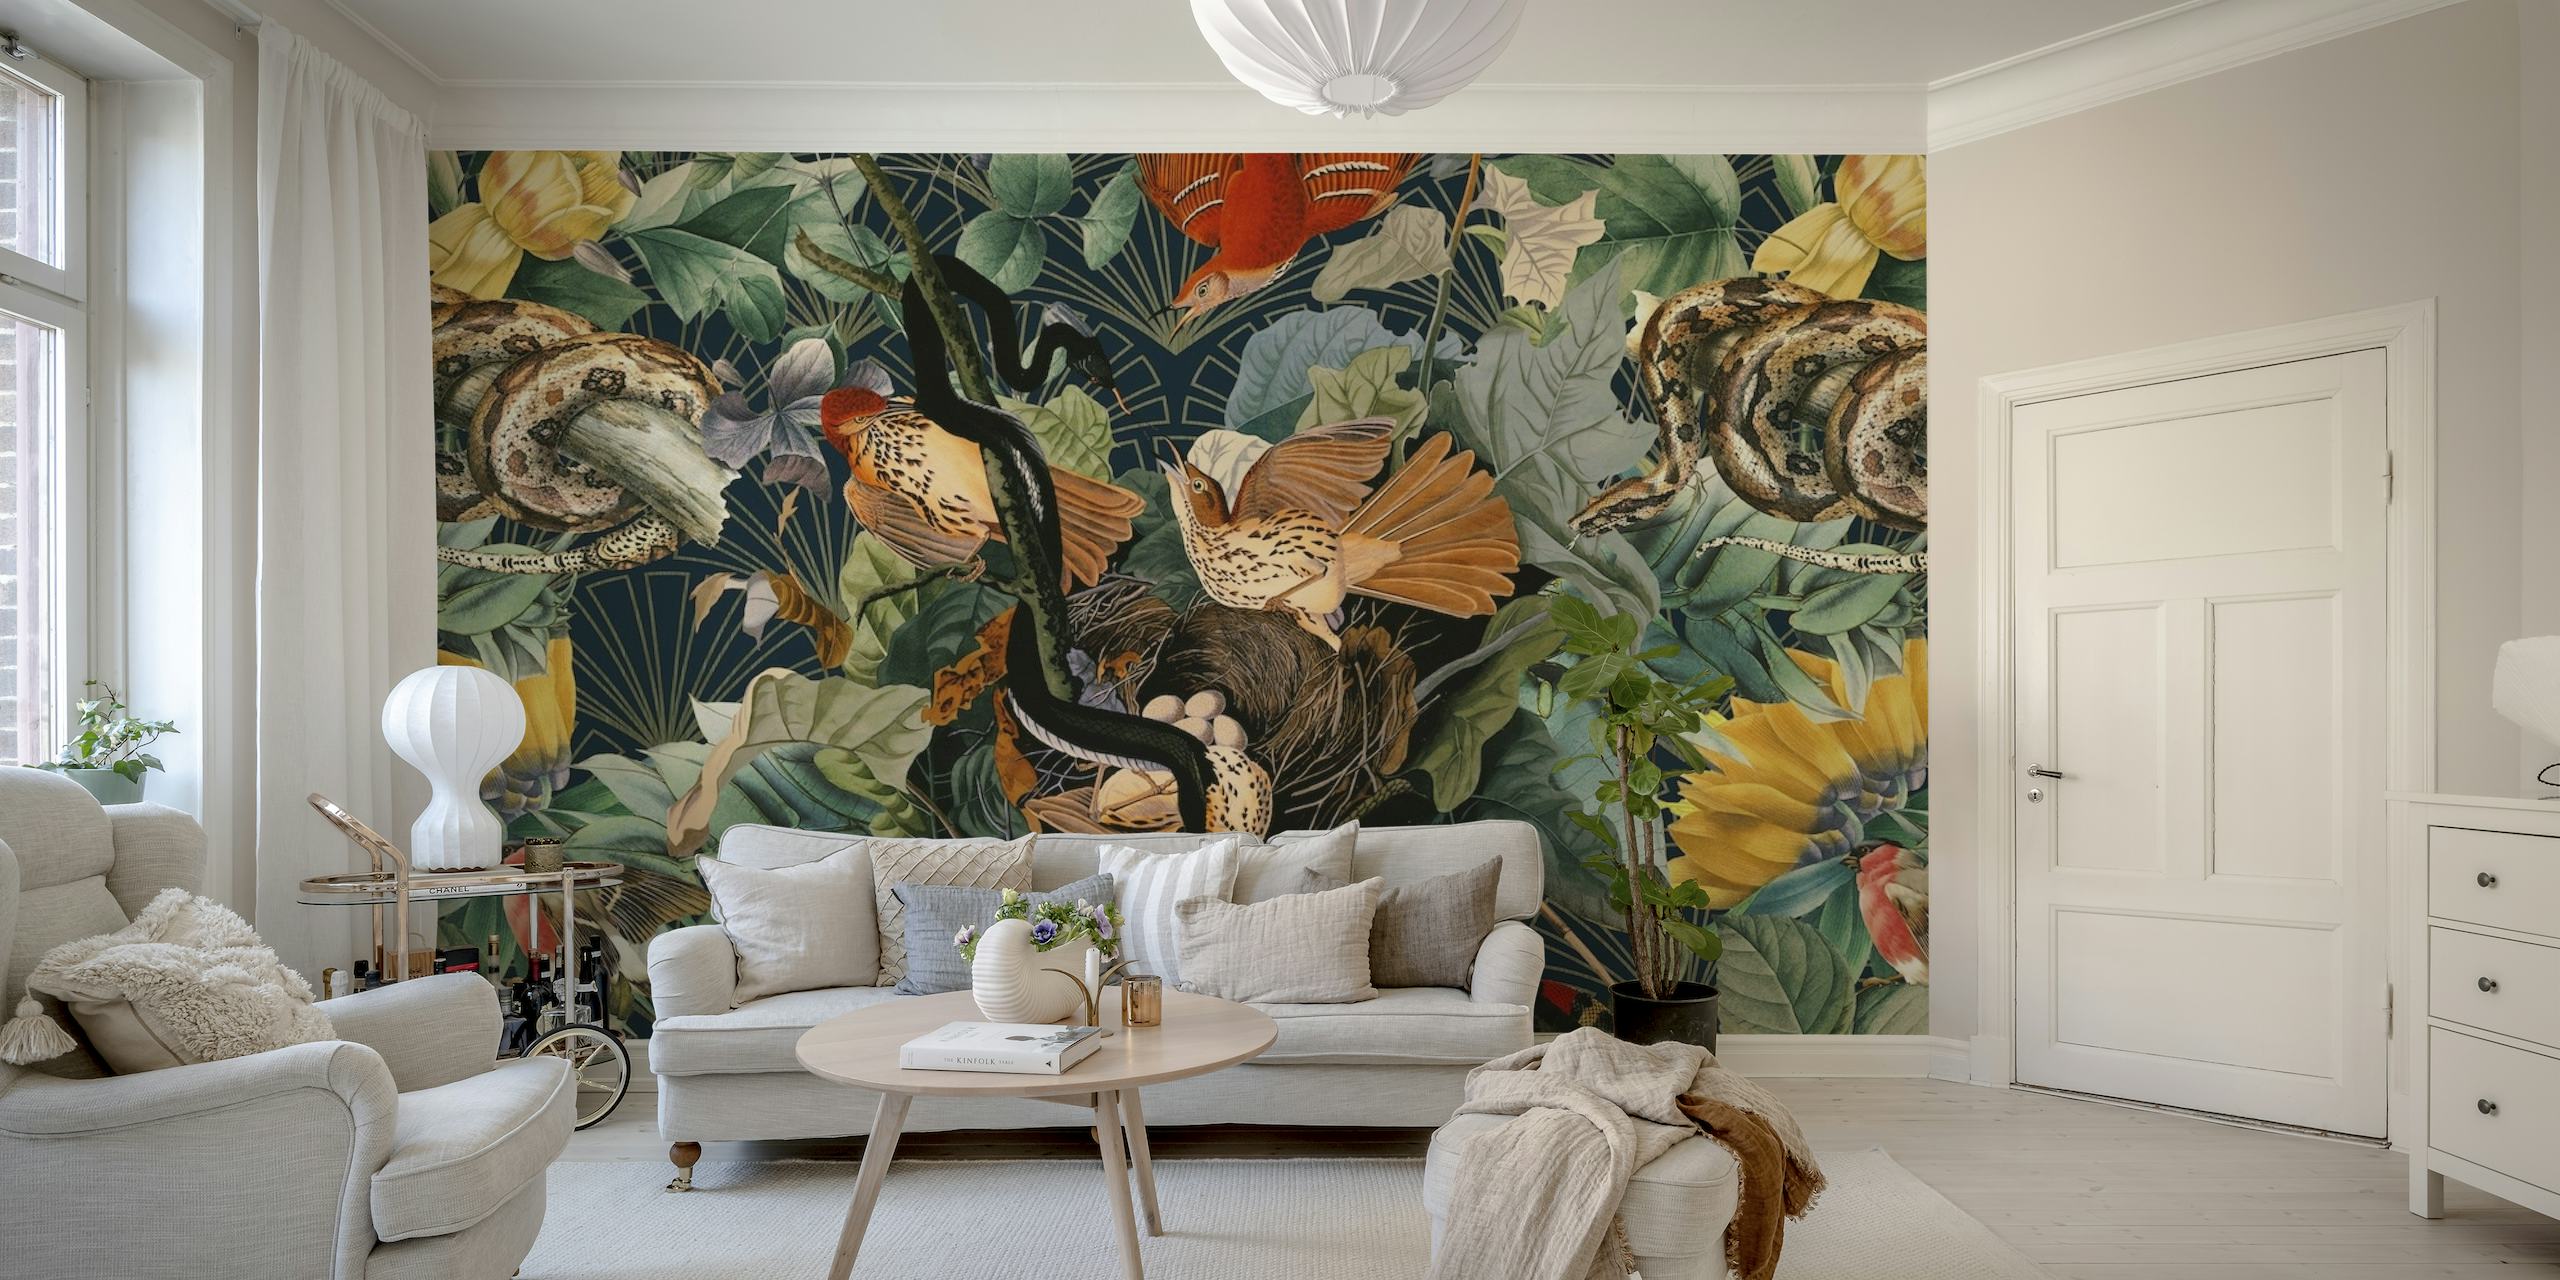 Vibrante mural con aves exóticas y serpientes en medio de una exuberante vegetación